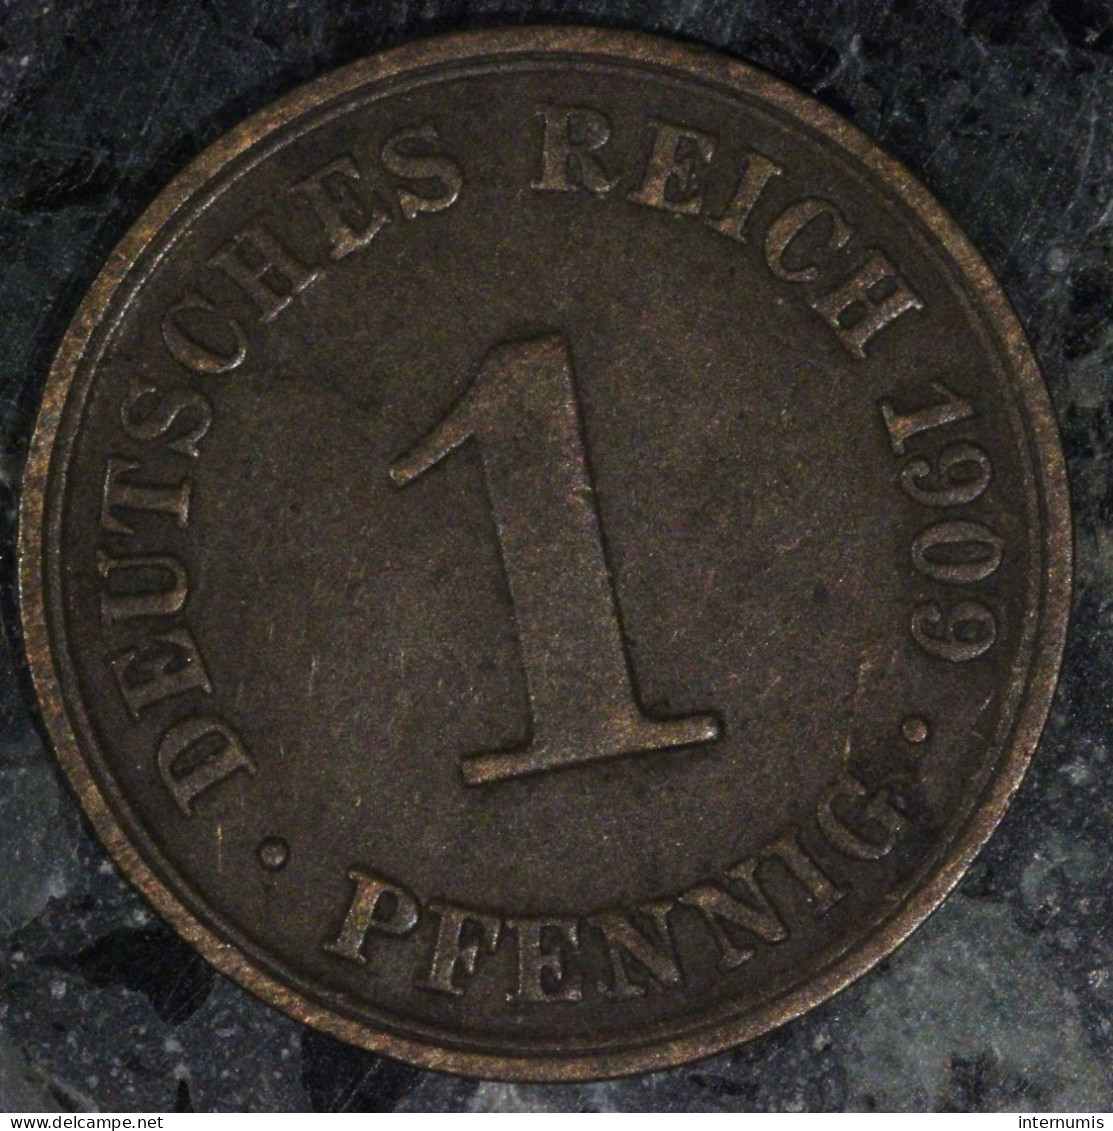  Allemagne / Germany, Wilhelm II, 1 Pfennig, 1909, Berlin, Cuivre (Copper), TTB (EF),
KM#10 - 2 Pfennig